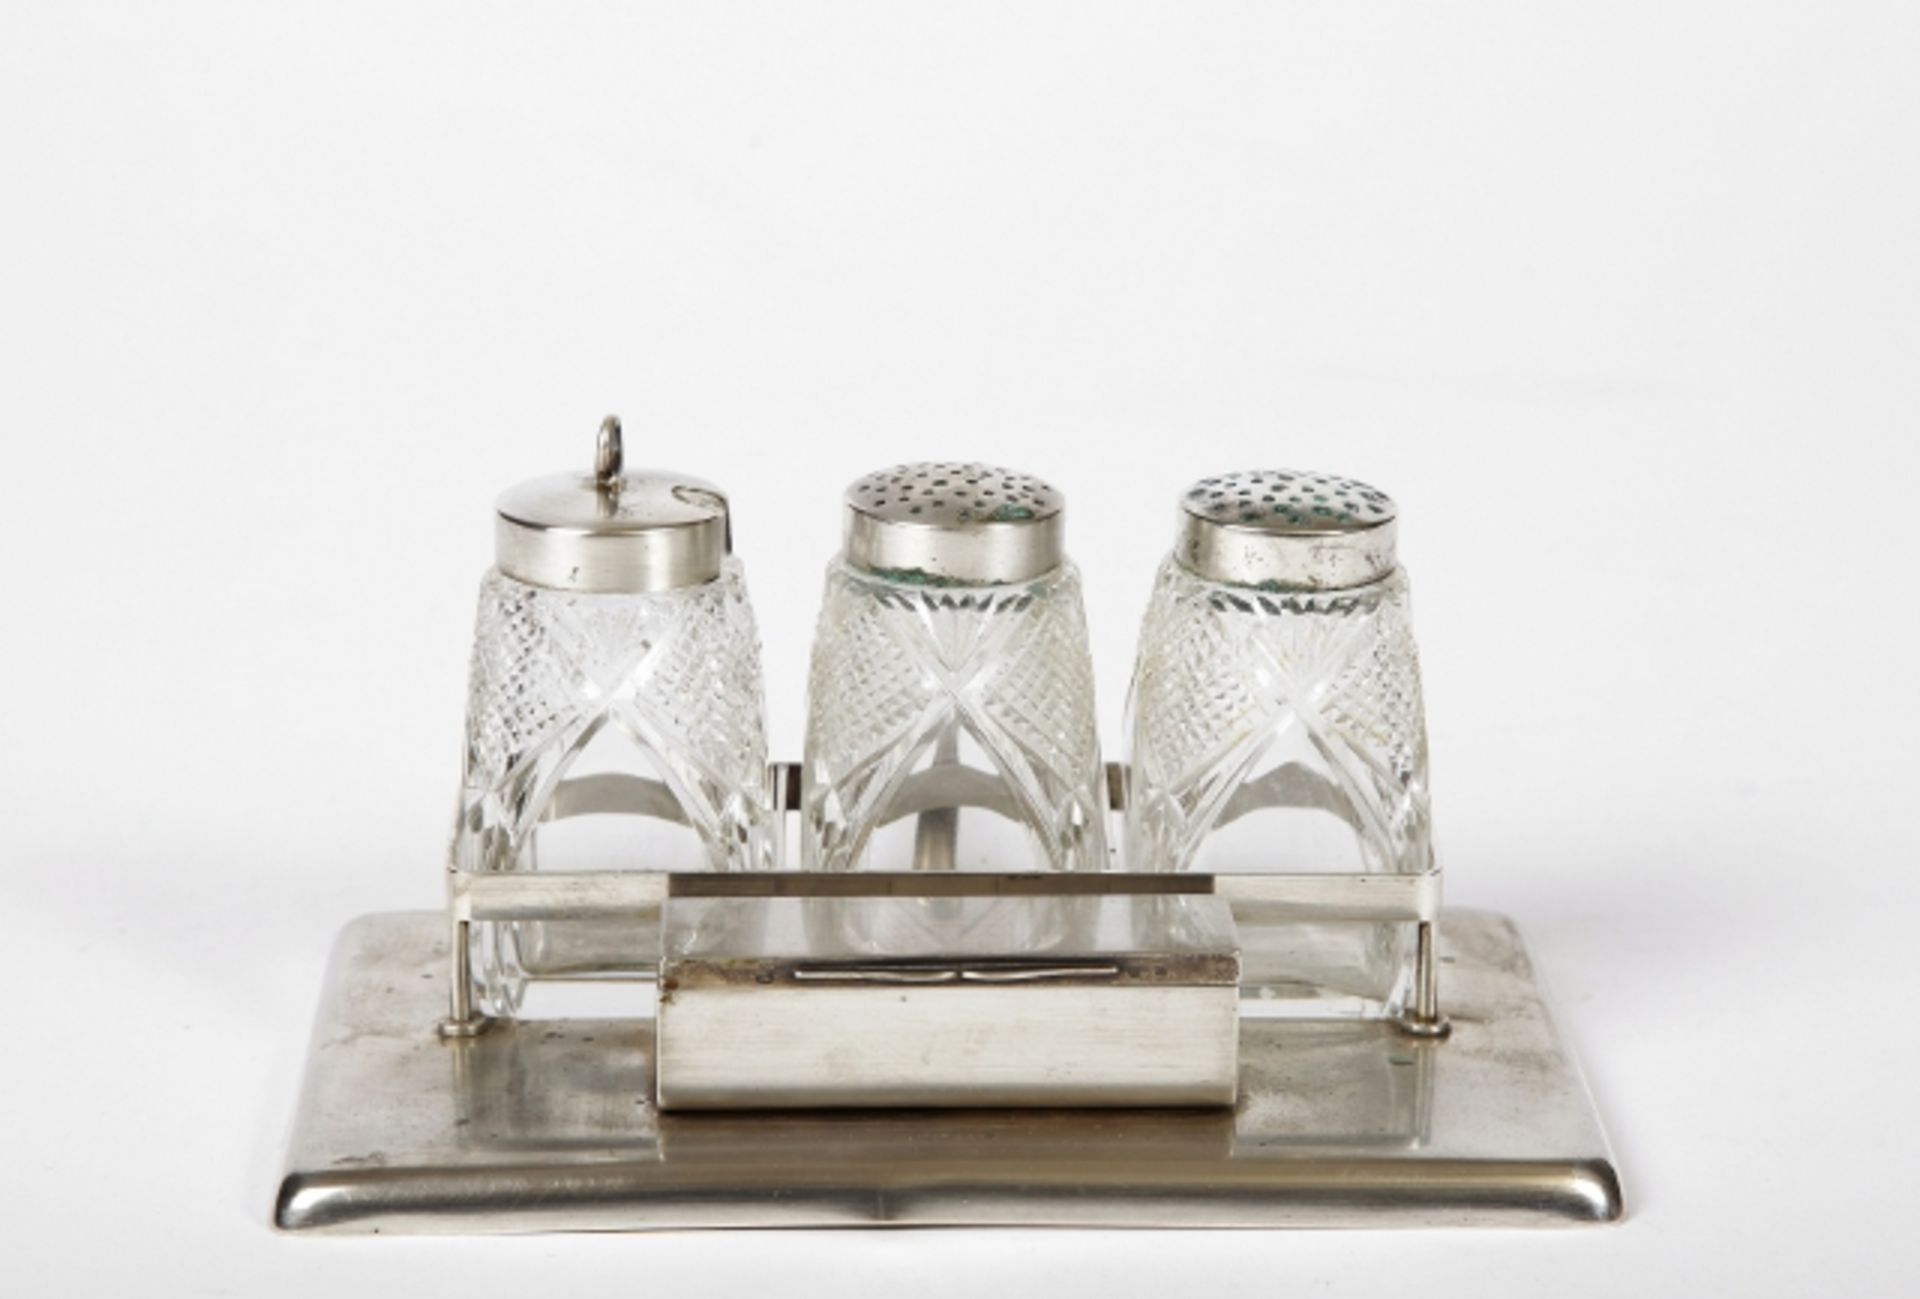 Menage in Halterung Silber 800, bestehend aus: Salz-, Pfeffer- und Zahnstocherbehälter, tlw. Glas,